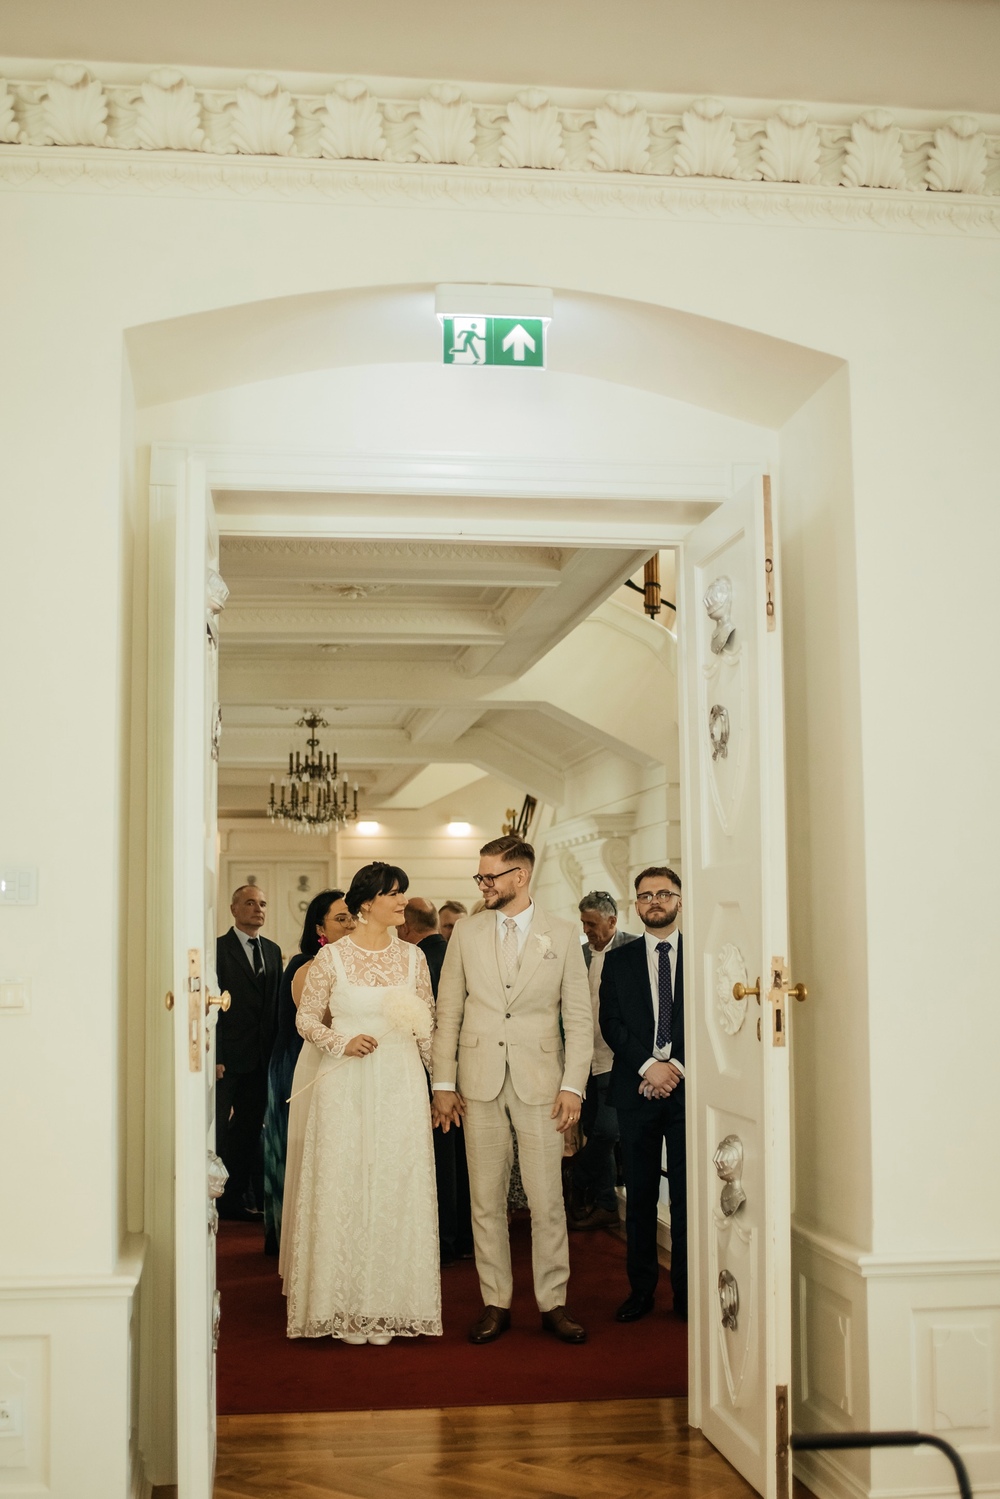 Romantyczny moment ślubu w historycznym otoczeniu Biblioteki Raczyńskich